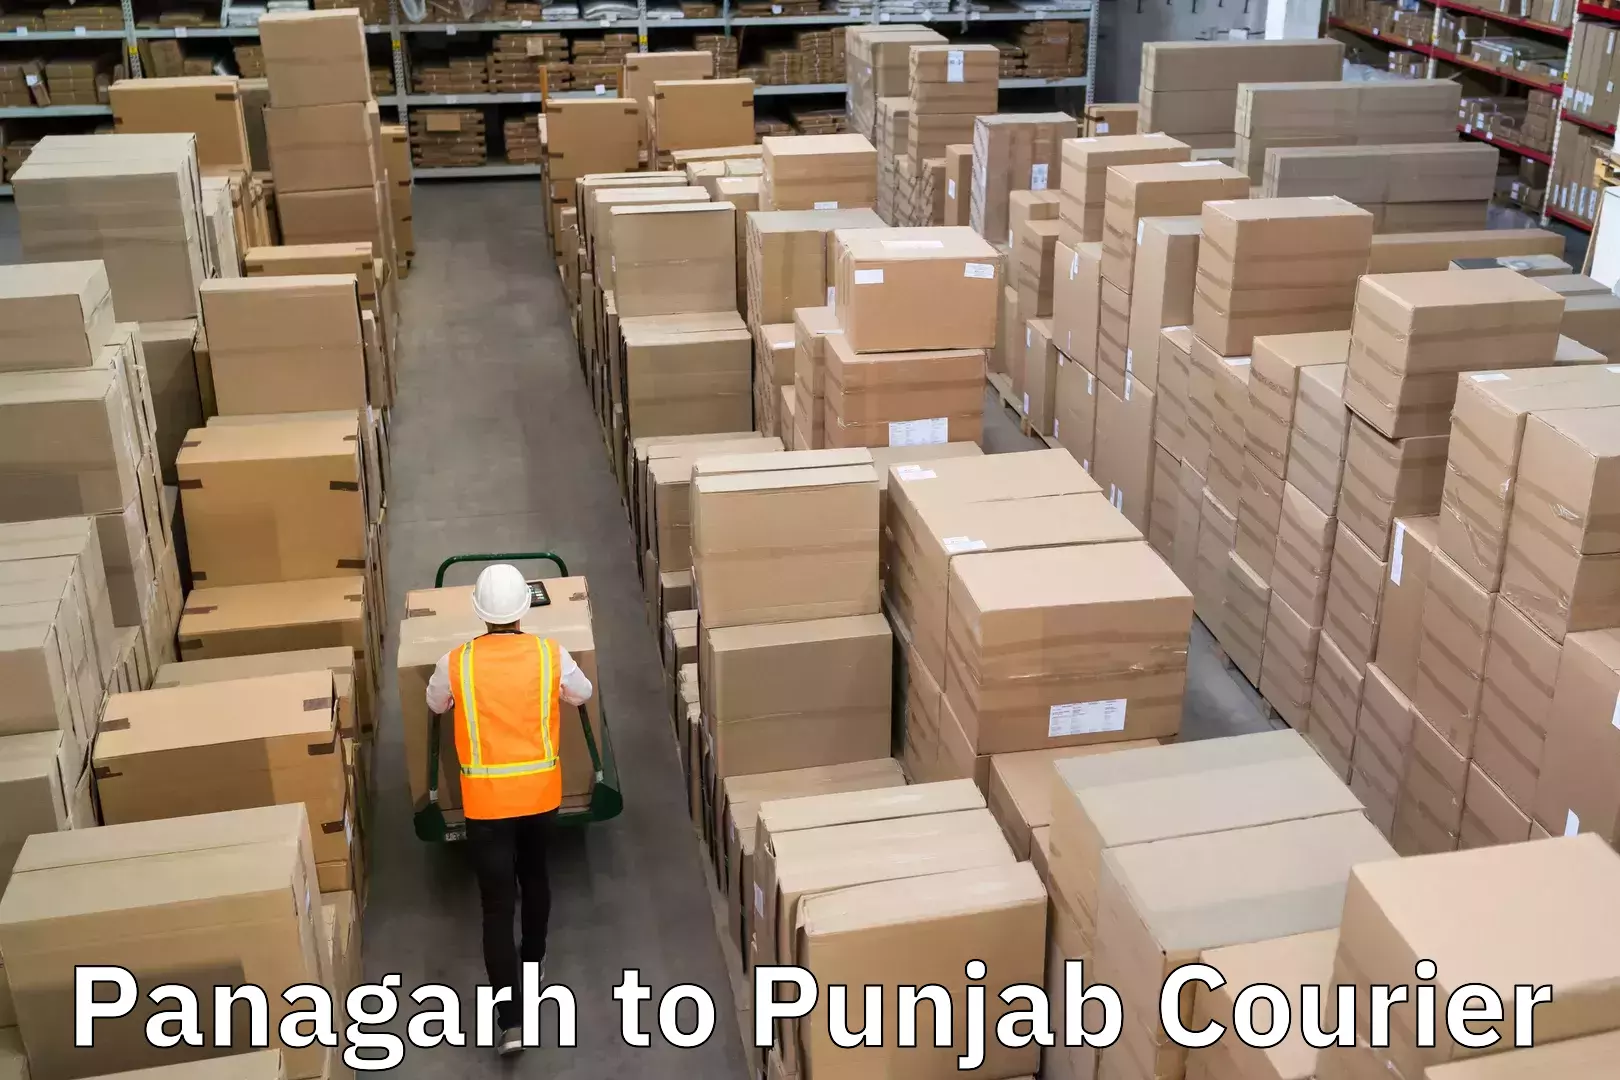 Express package handling Panagarh to Punjab